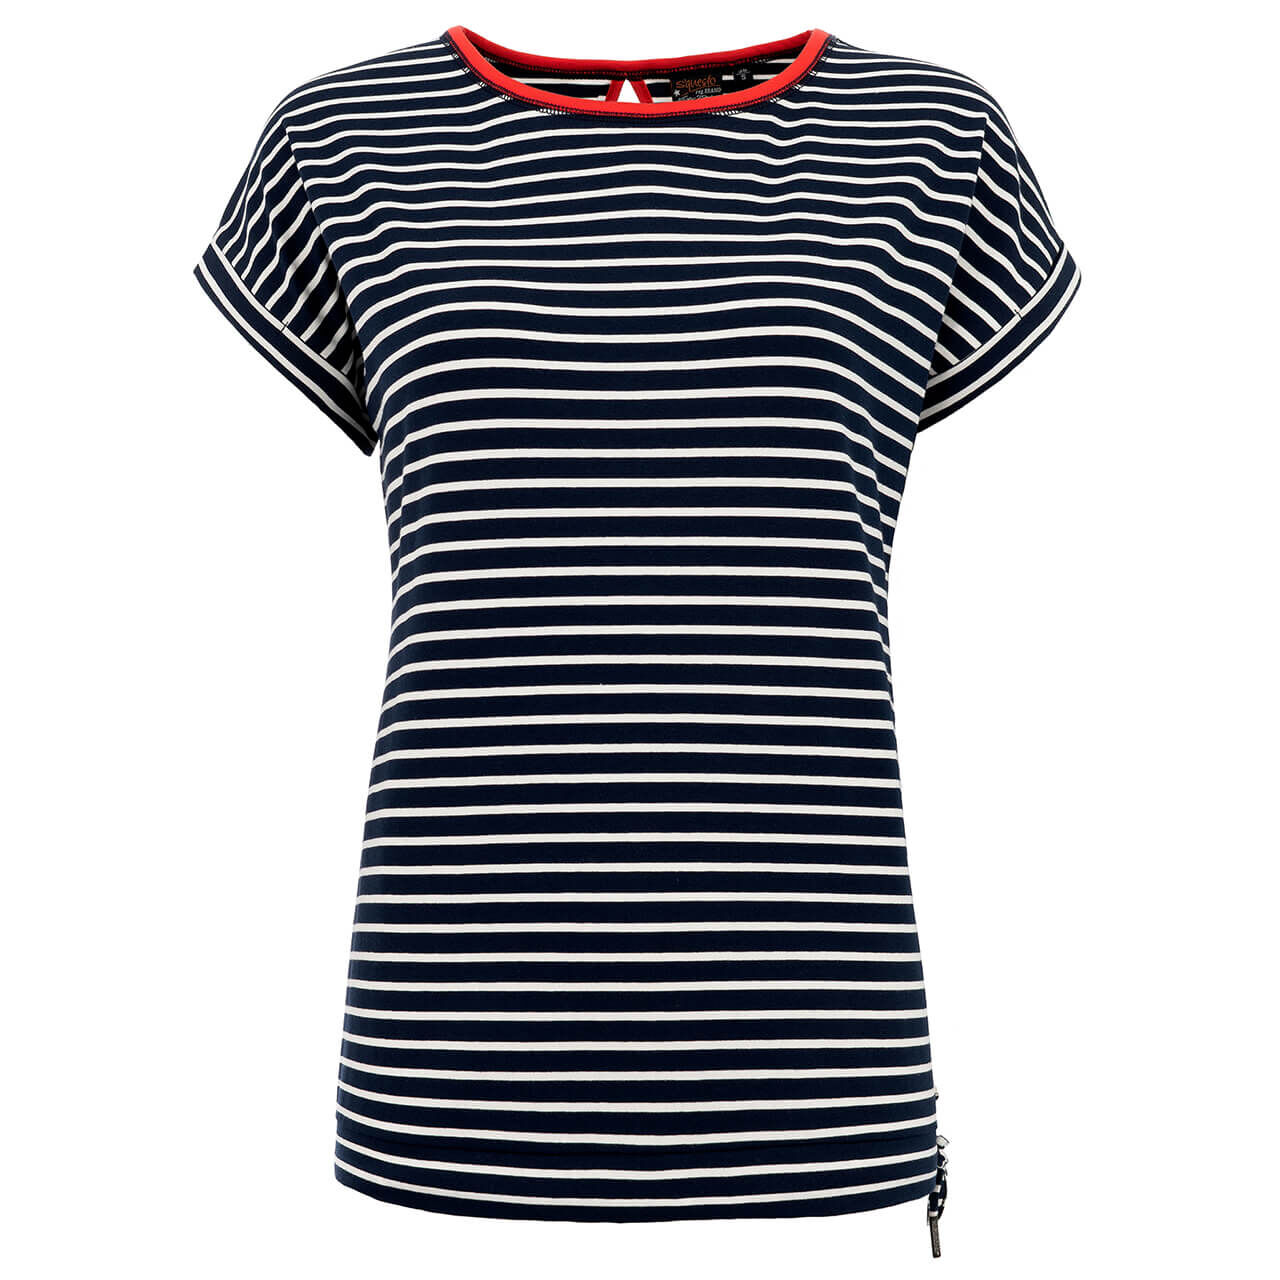 Soquesto T-Shirt für Damen in Dunkelblau gestreift, FarbNr.: 2800